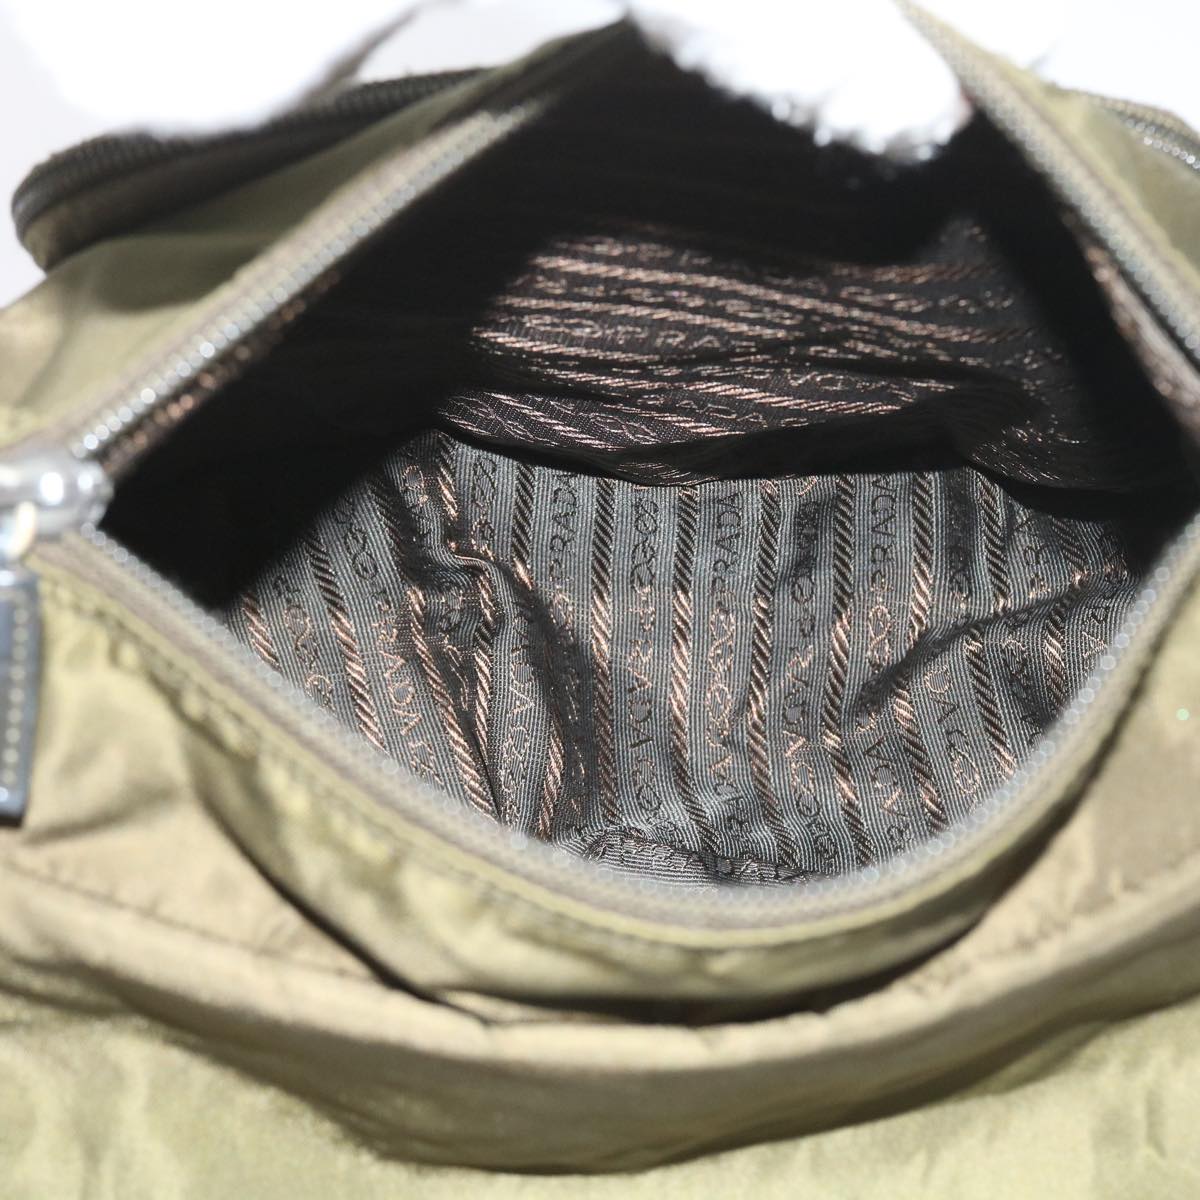 PRADA Shoulder Bag Nylon Khaki Auth ac2425